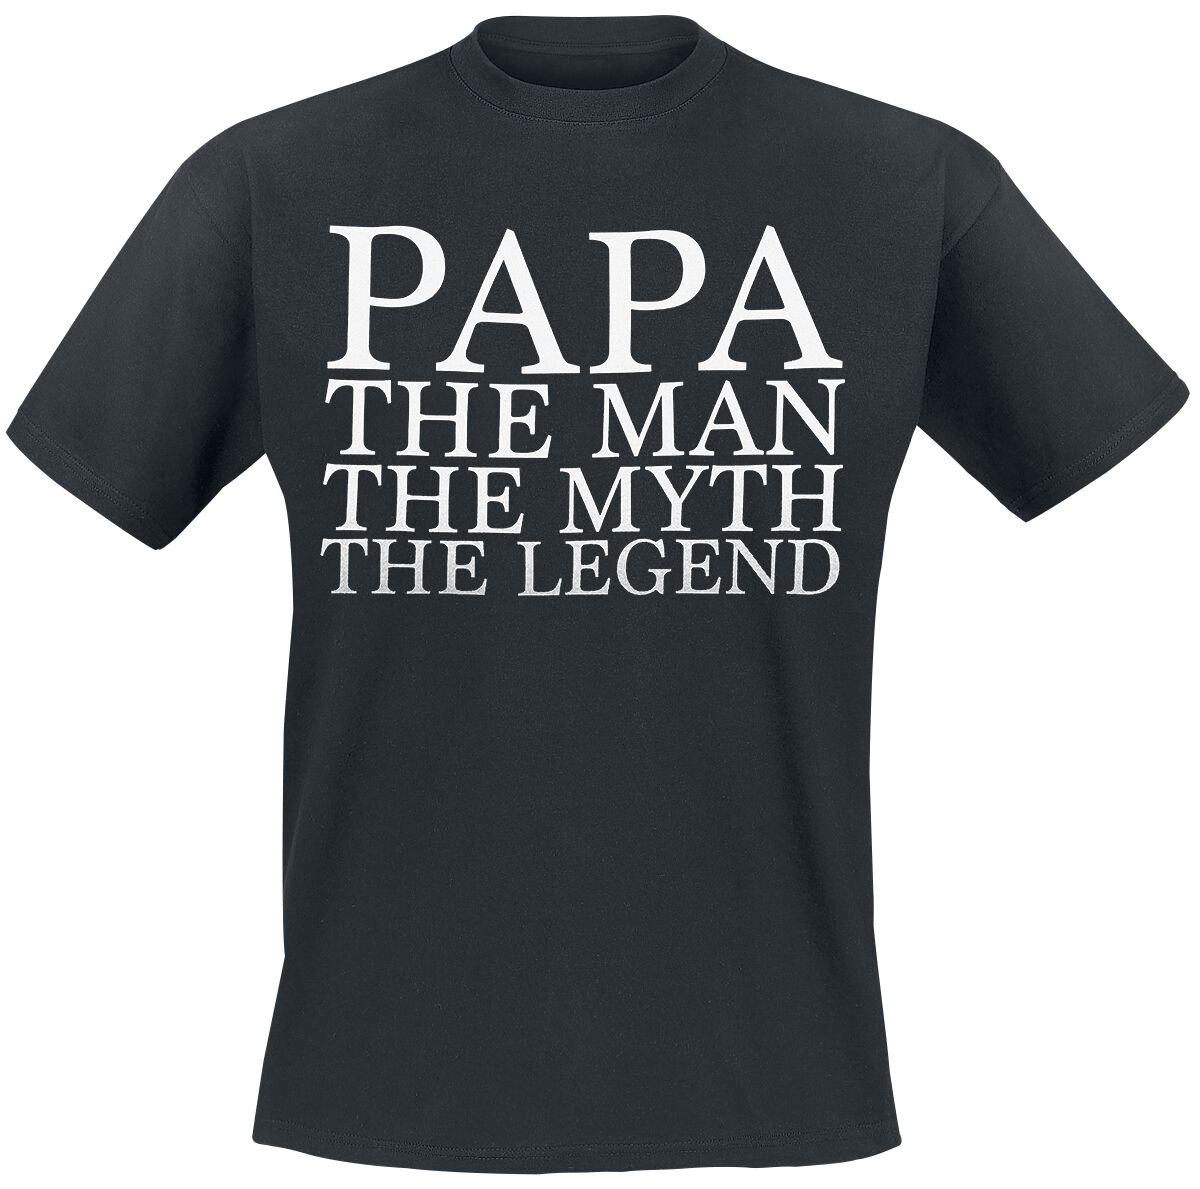 Familie & Freunde T-Shirt - Papa - The Man - M bis 3XL - für Männer - Größe 3XL - schwarz